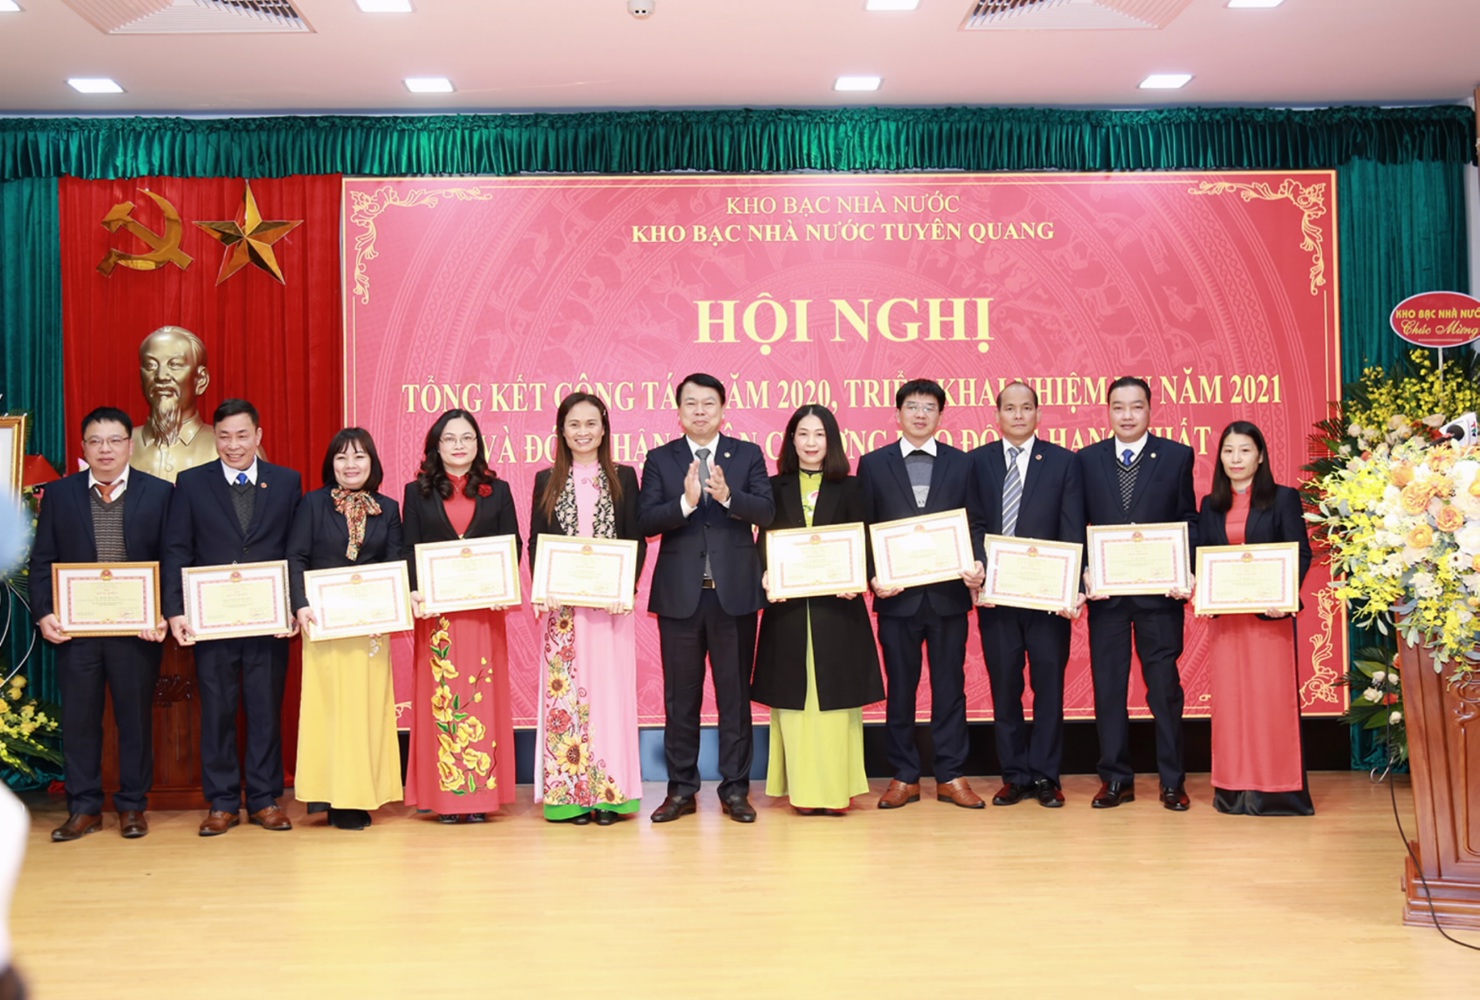 Tổng Giám đốc Kho bạc Nhà nước Nguyễn Đức Chi trao danh hiệu Chiến sỹ thi đua ngành Tài chính, Bằng khen cho các cán bộ, công chức của Kho bạc Nhà nước Tuyên Quang.